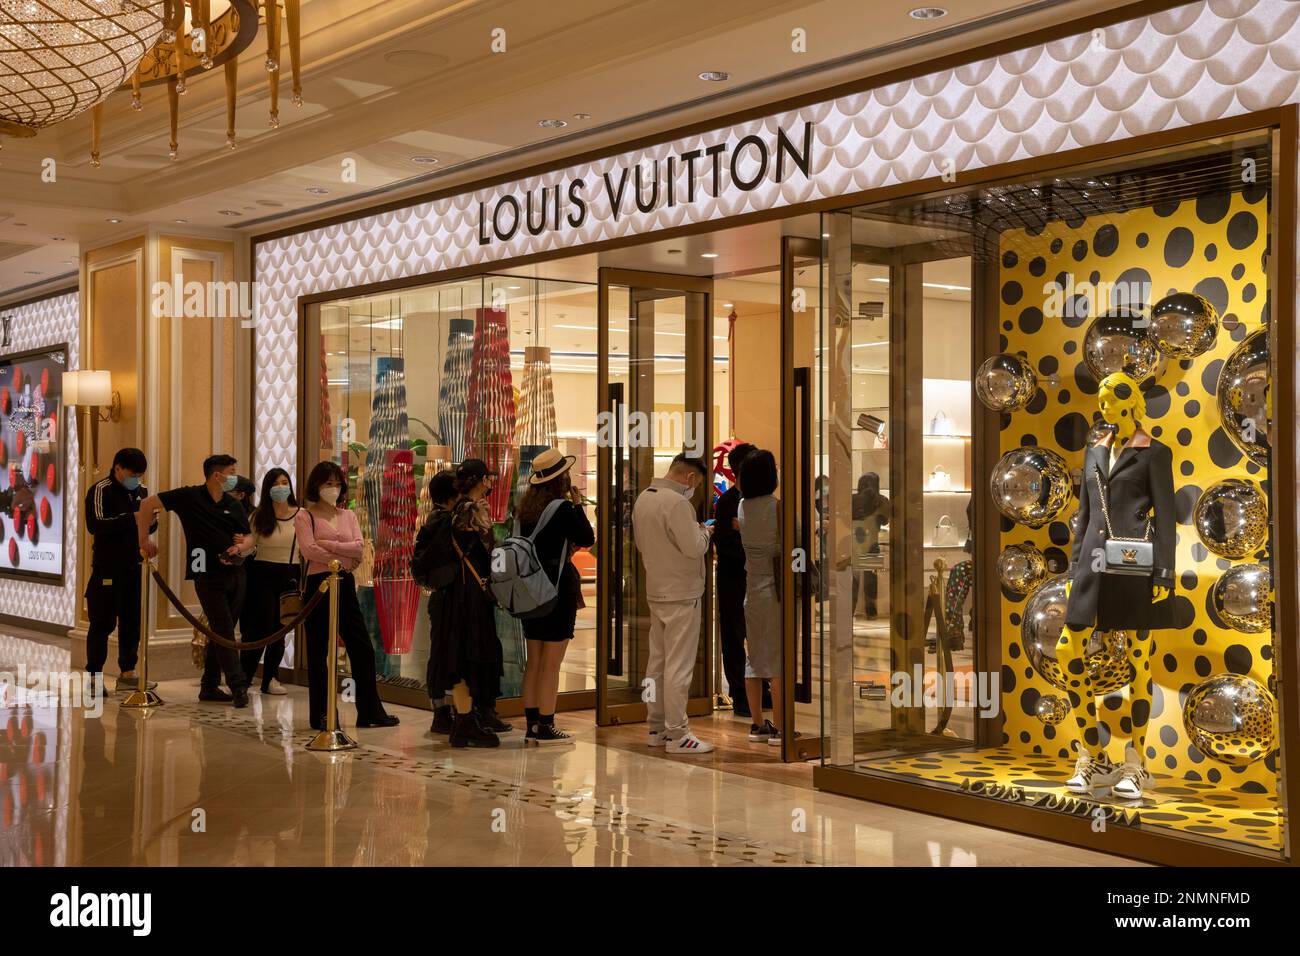 LOUIS VUITTON AT TERMINAL 5 - Luxury RetailLuxury Retail